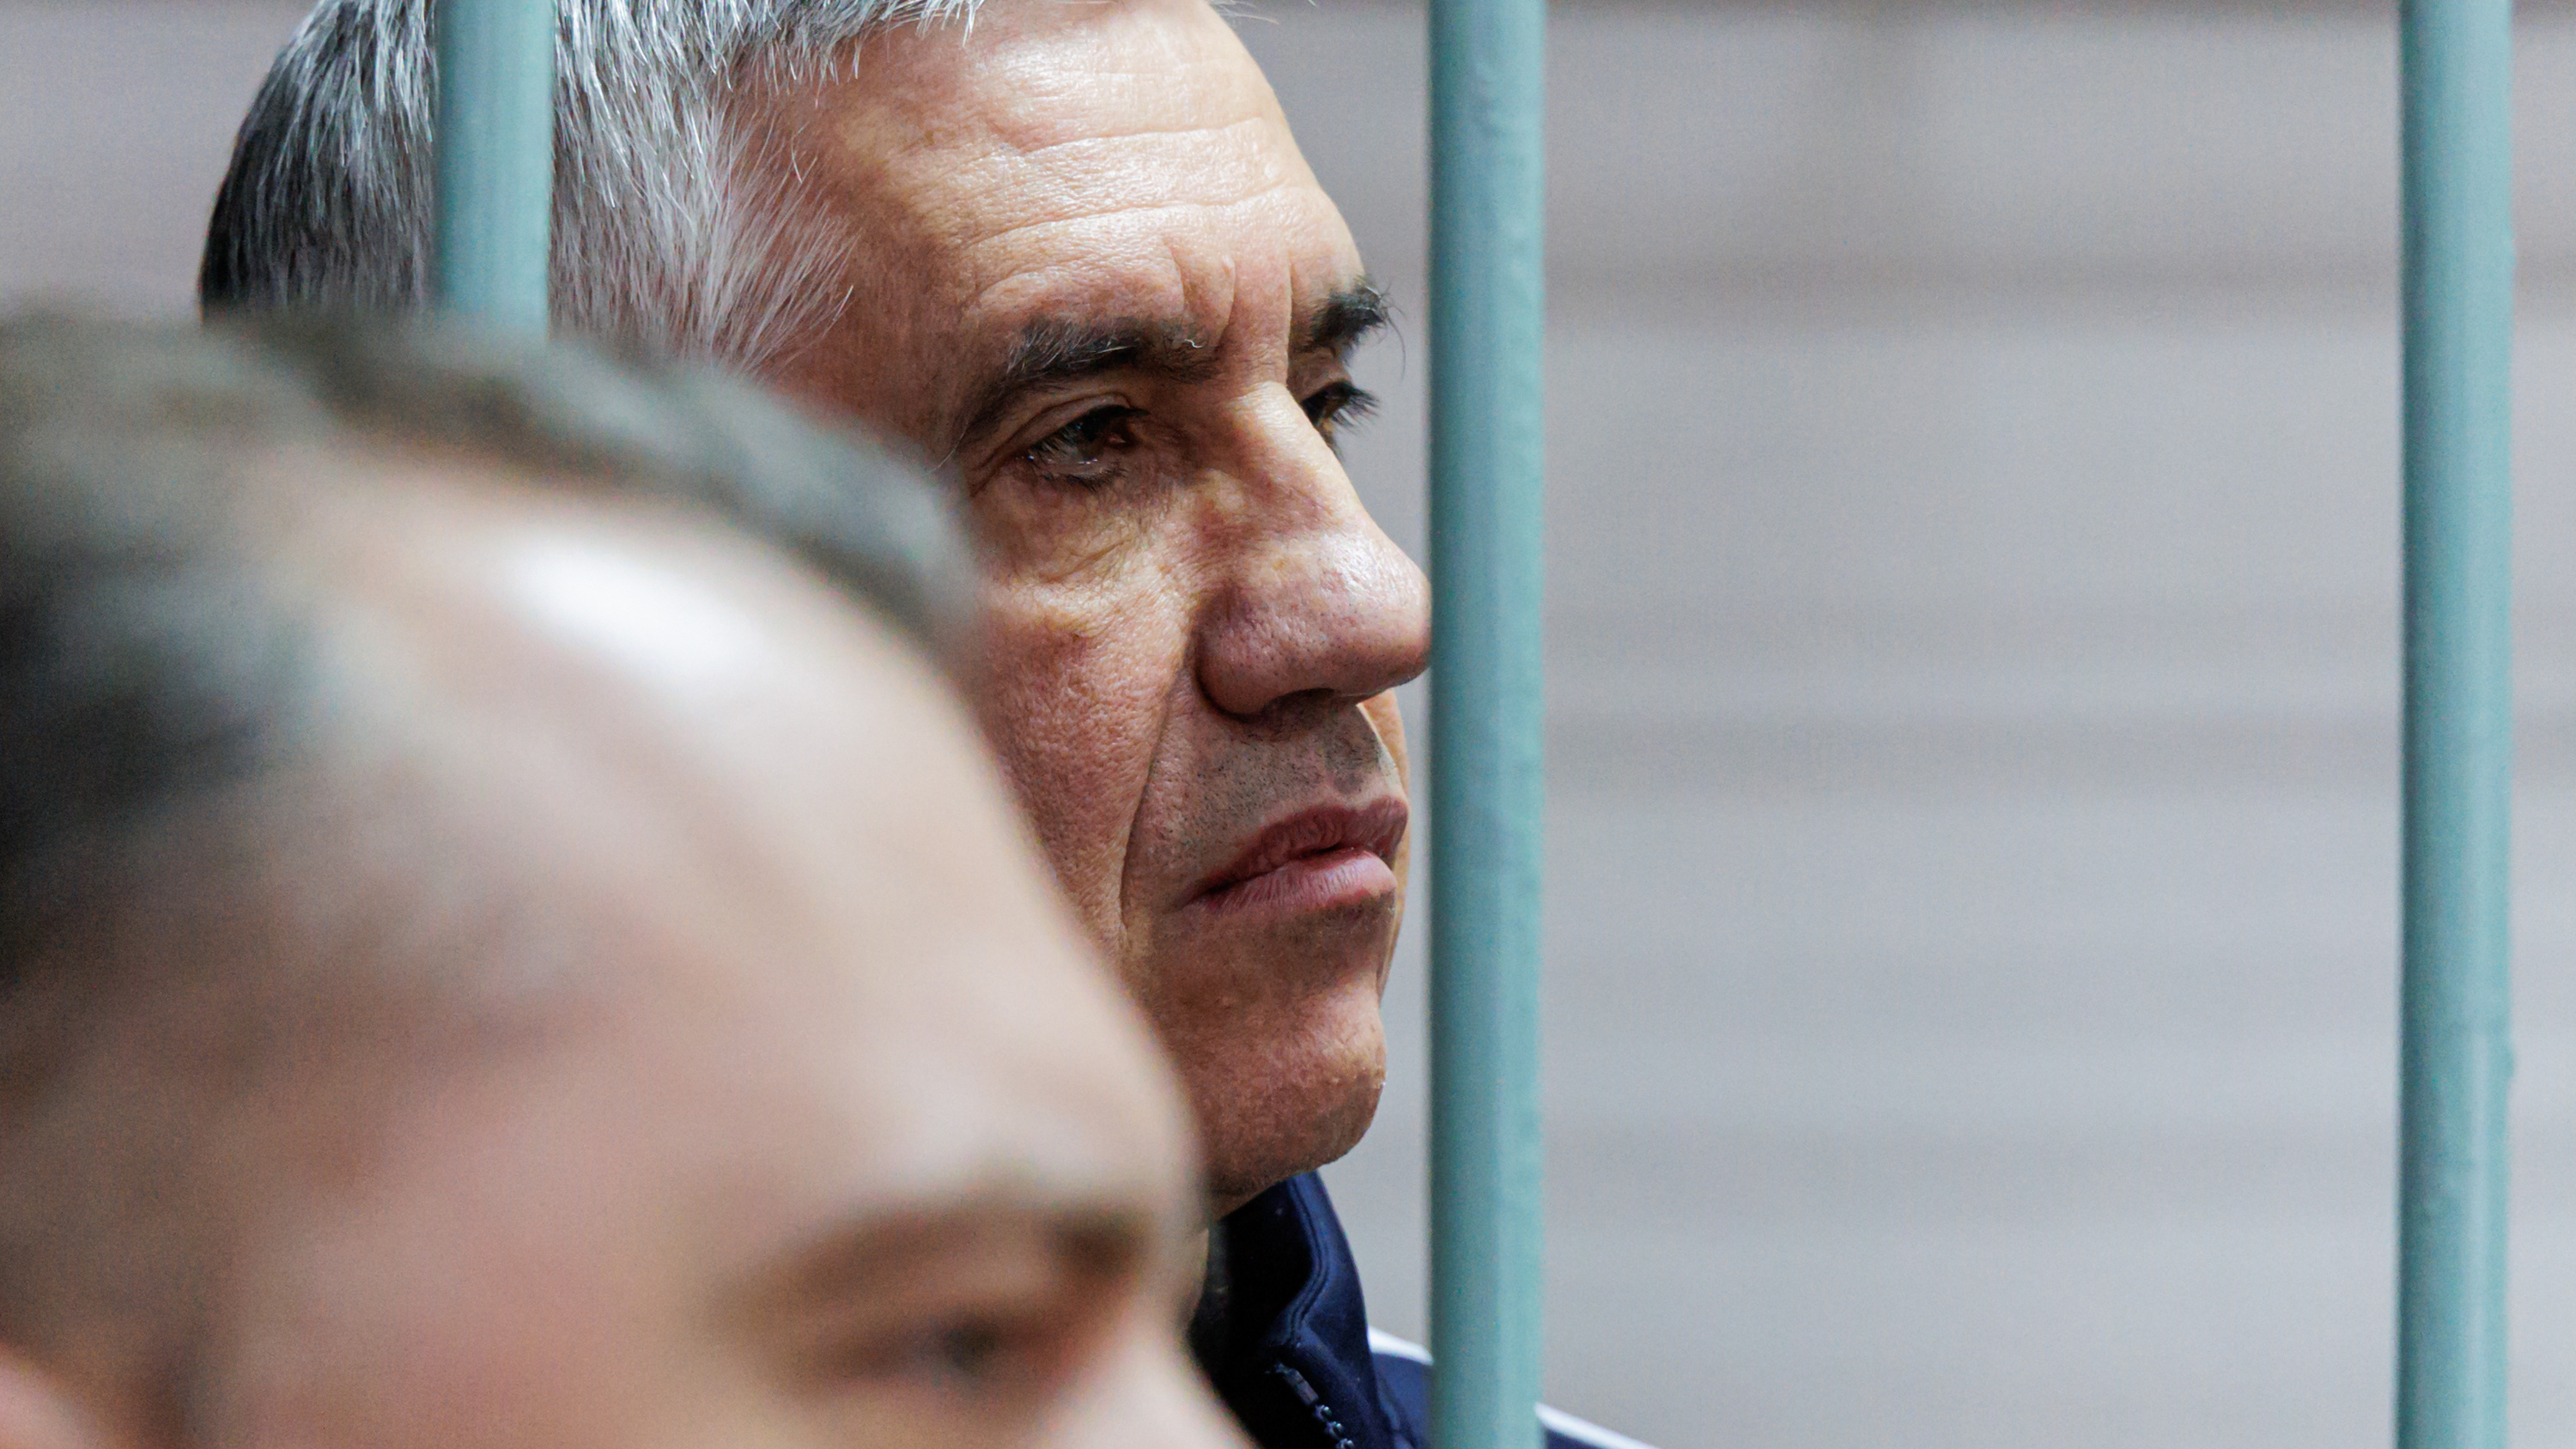 Анатолия Быкова собираются отправить отбывать срок в Карелию. Его адвокат говорит, что это незаконно